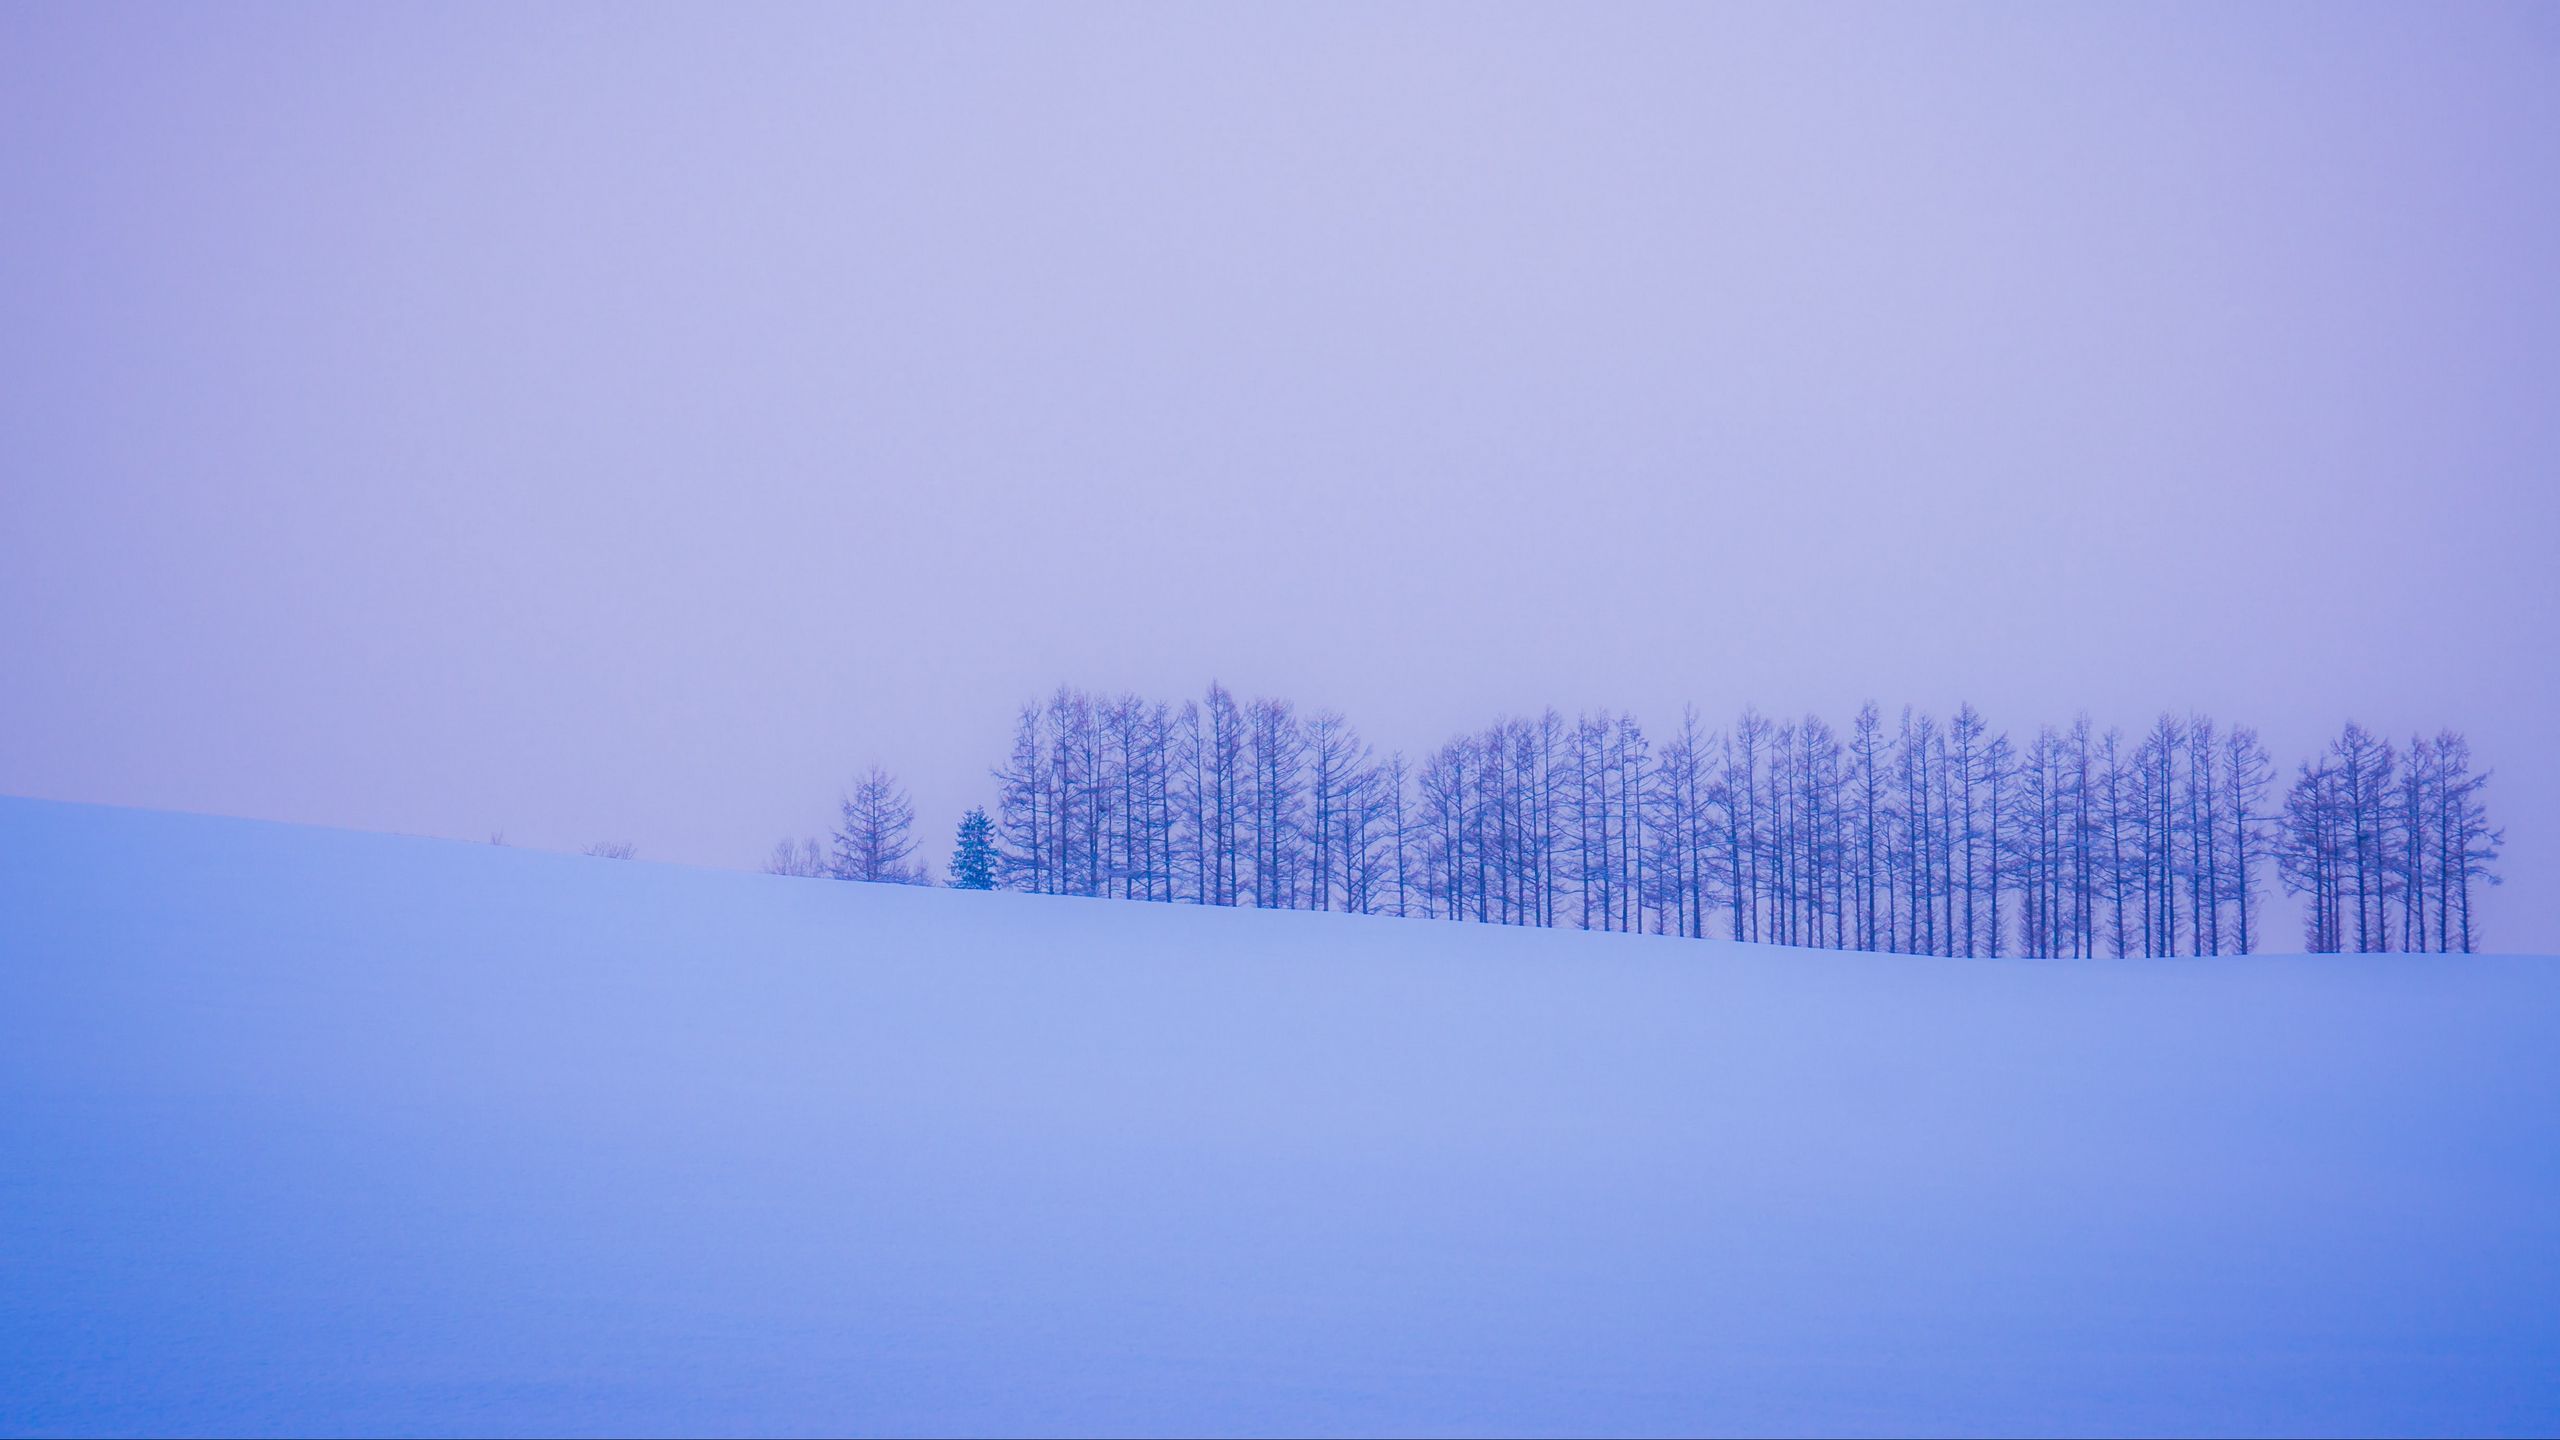 Download wallpaper 2560x1440 trees, snow, winter, minimalism